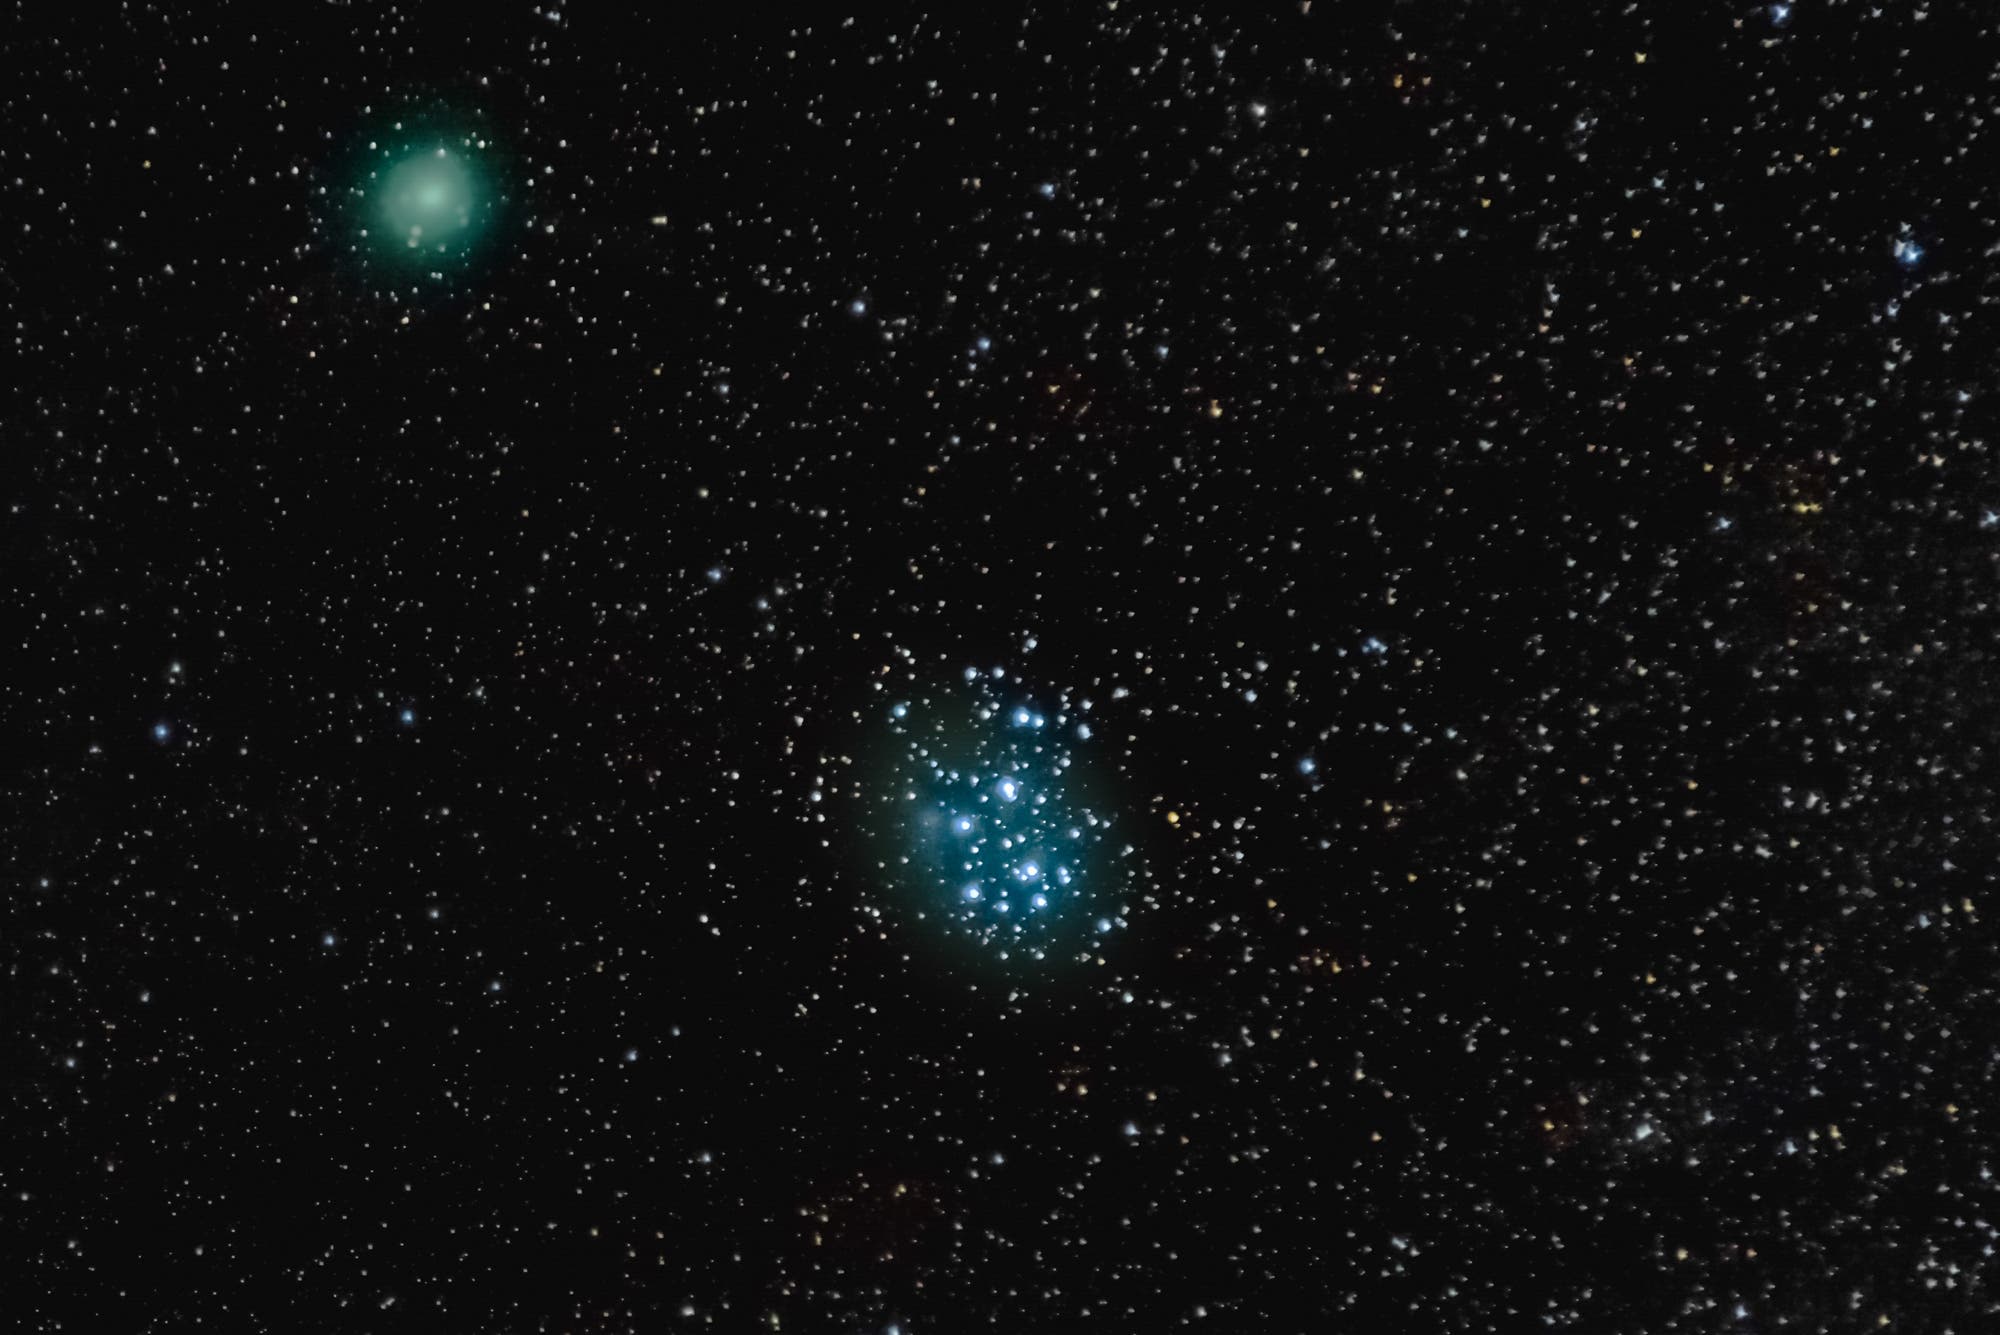 Komet P 46 Wirtanen und Messier 45